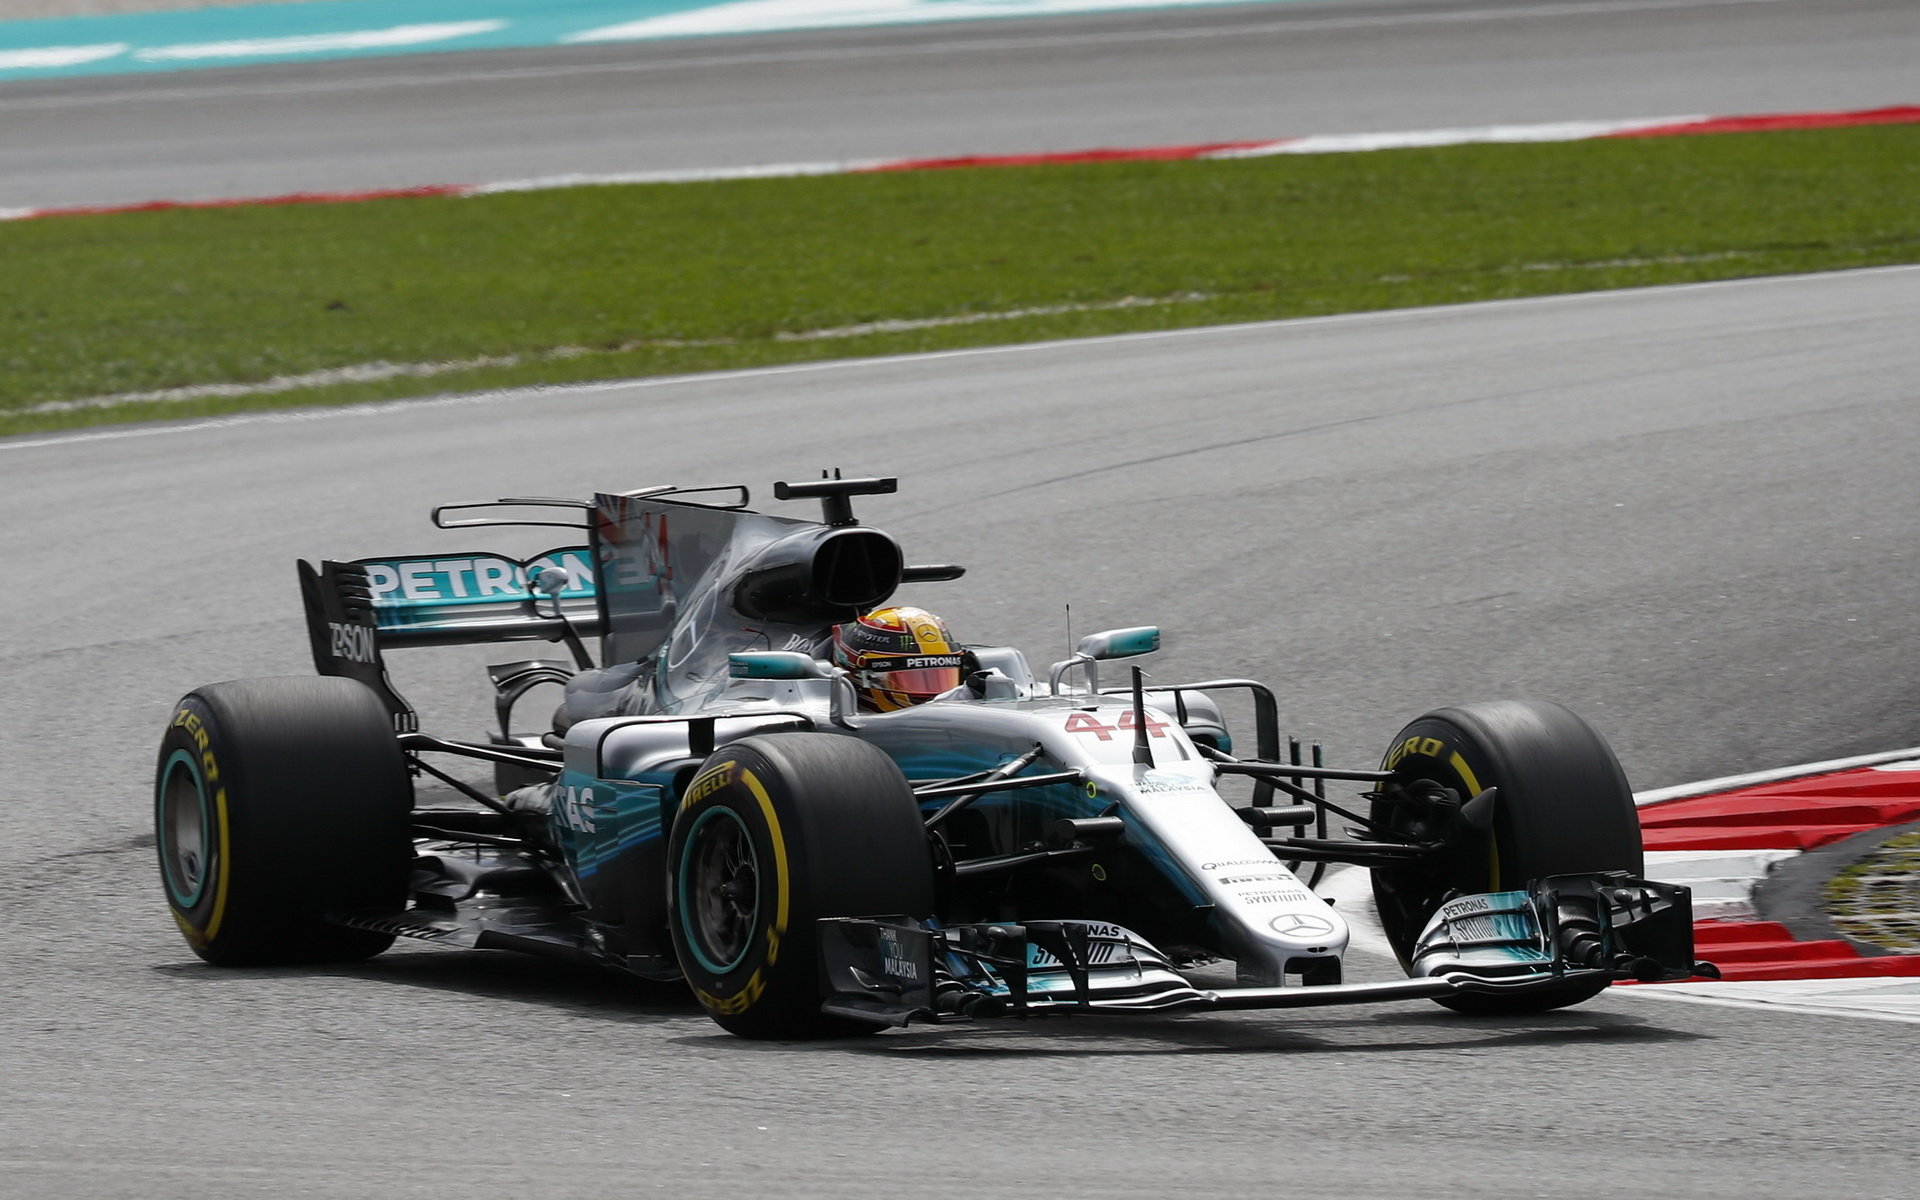 Lewis Hamilton sice nevyhrál, ale druhé místo mu rozhodně prozatím stačí